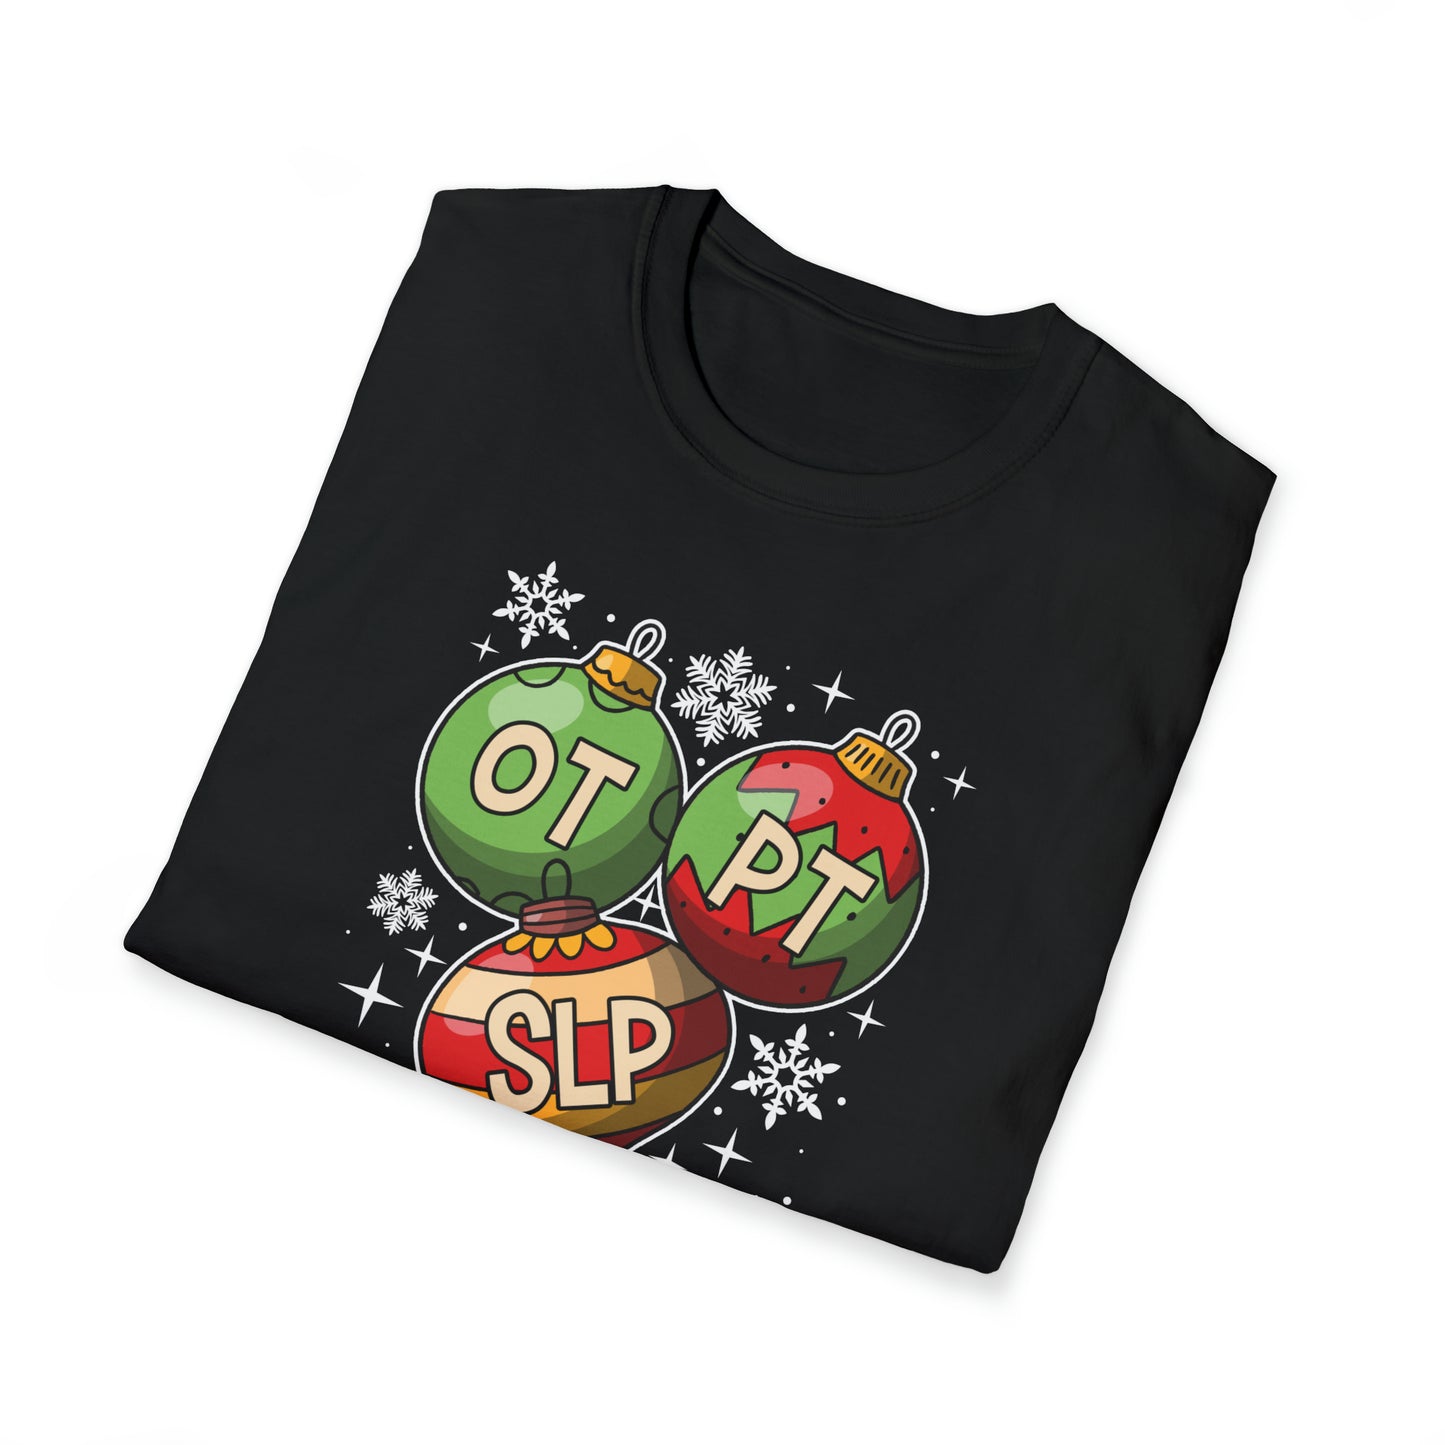 OT PT SLP Christmas Ornament Shirt